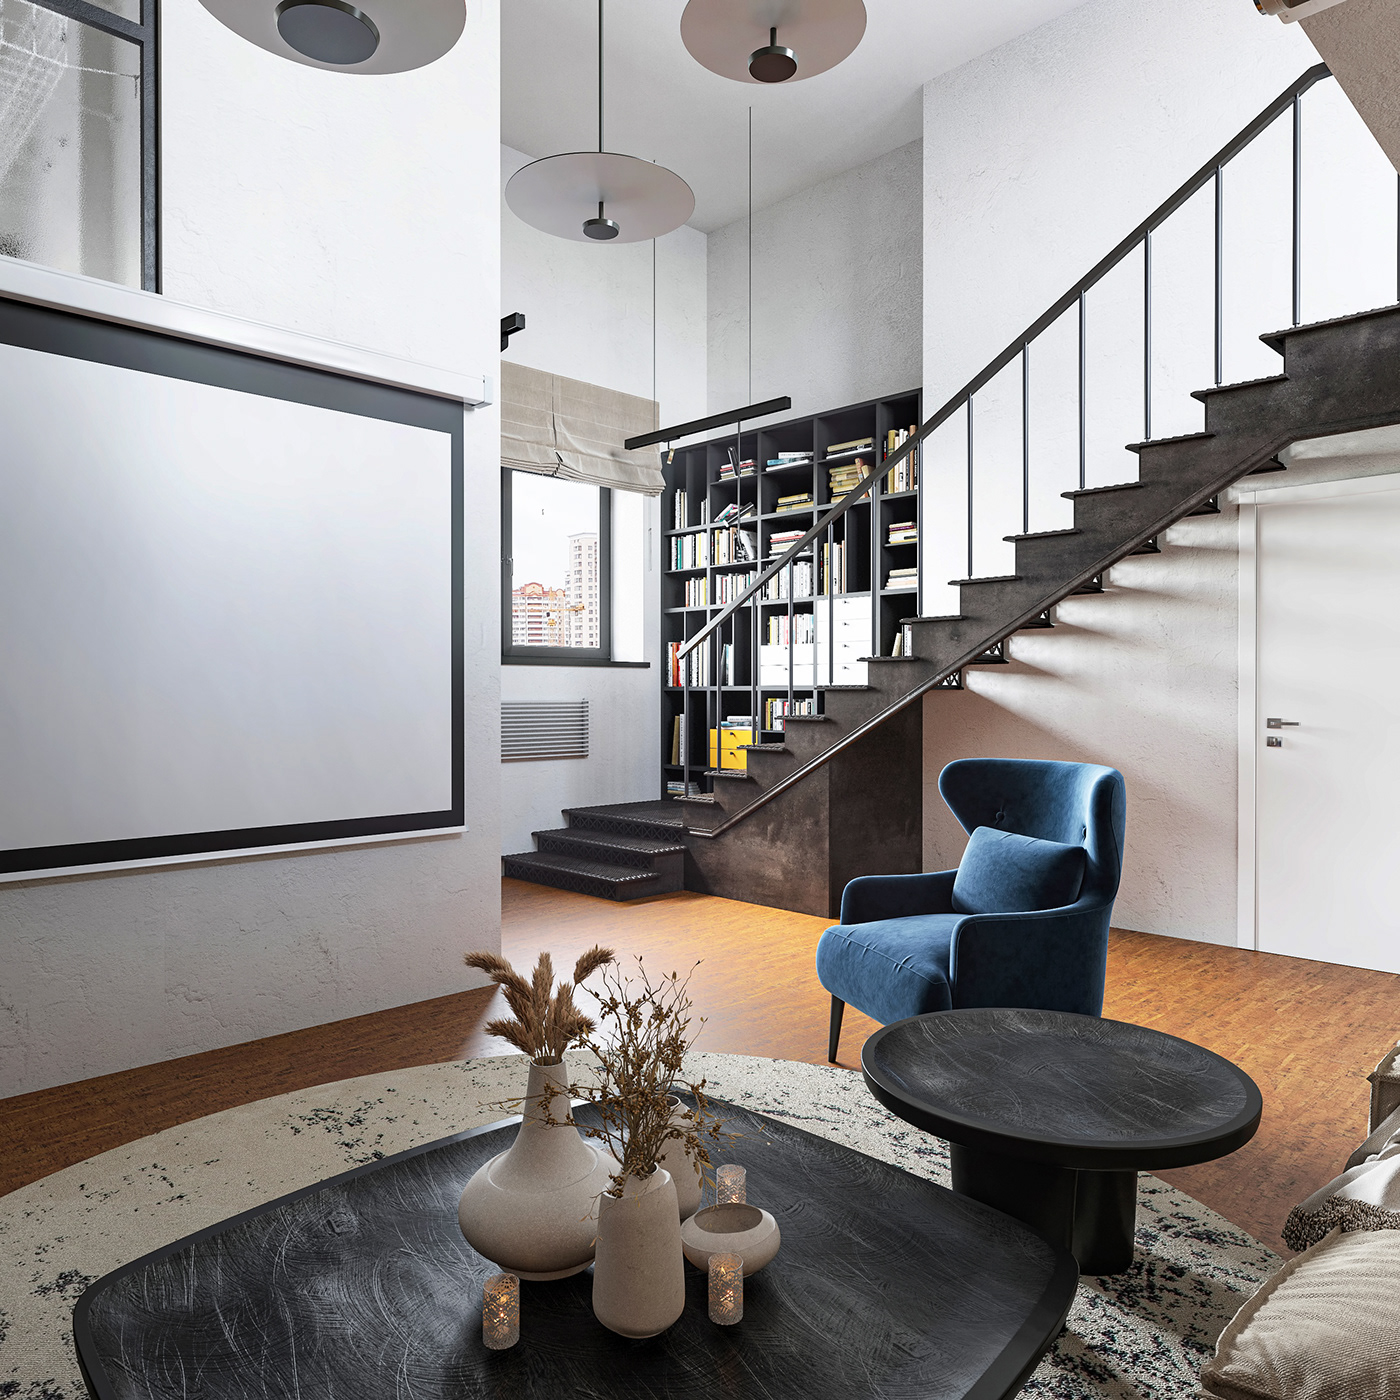 3ds max appartment duplex kitchen interior Scandinavian visualization whitewalls